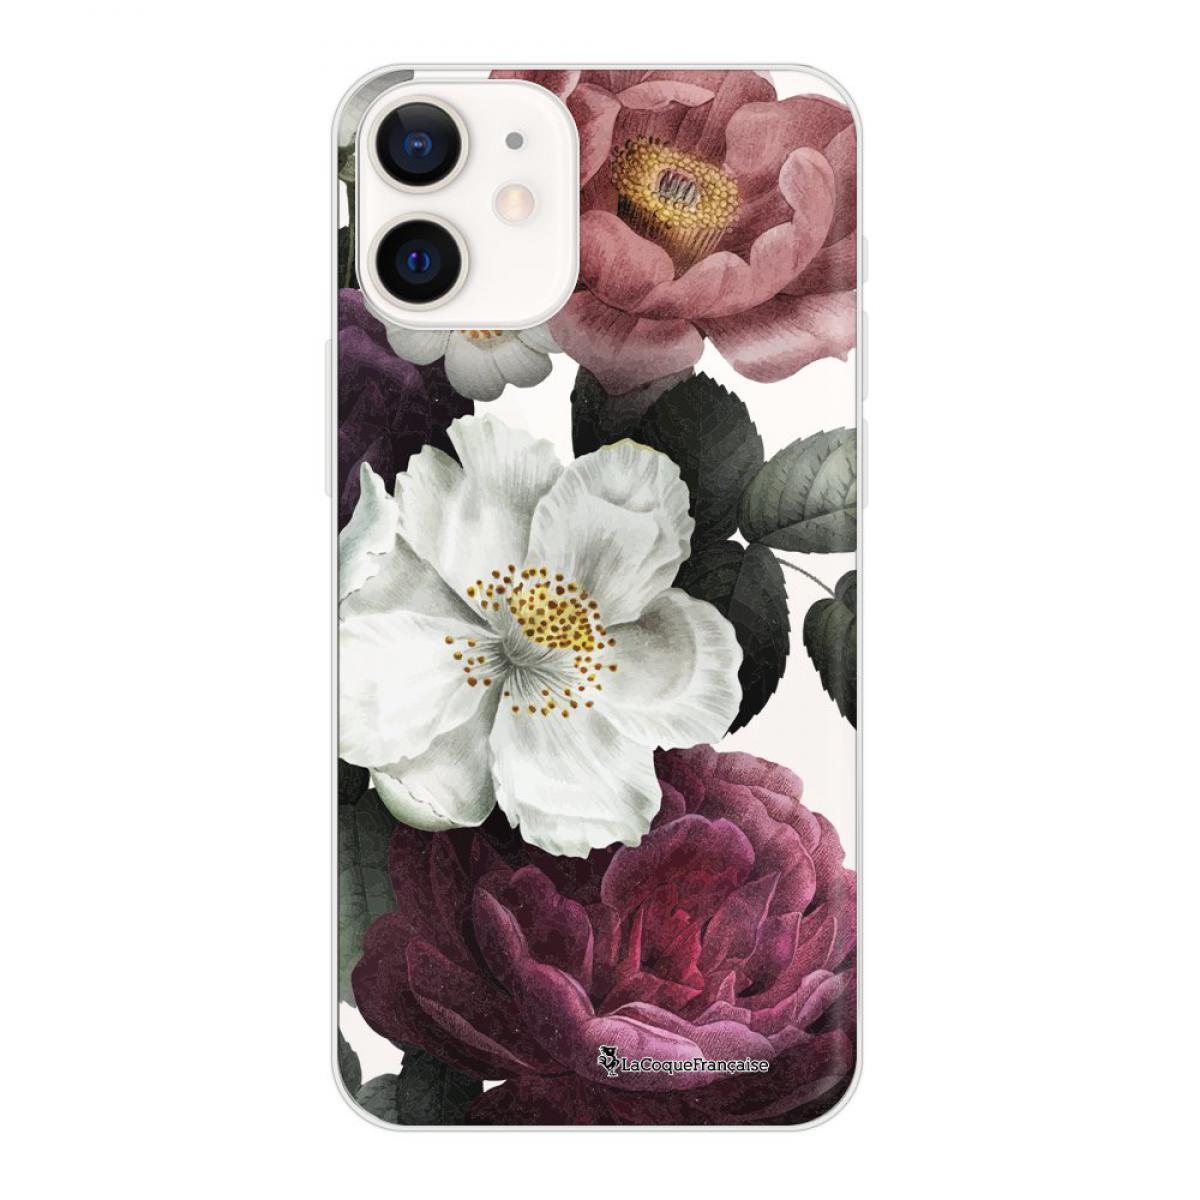 La Coque Francaise - Coque iPhone 12 mini souple transparente Fleurs roses Motif Ecriture Tendance La Coque Francaise - Coque, étui smartphone